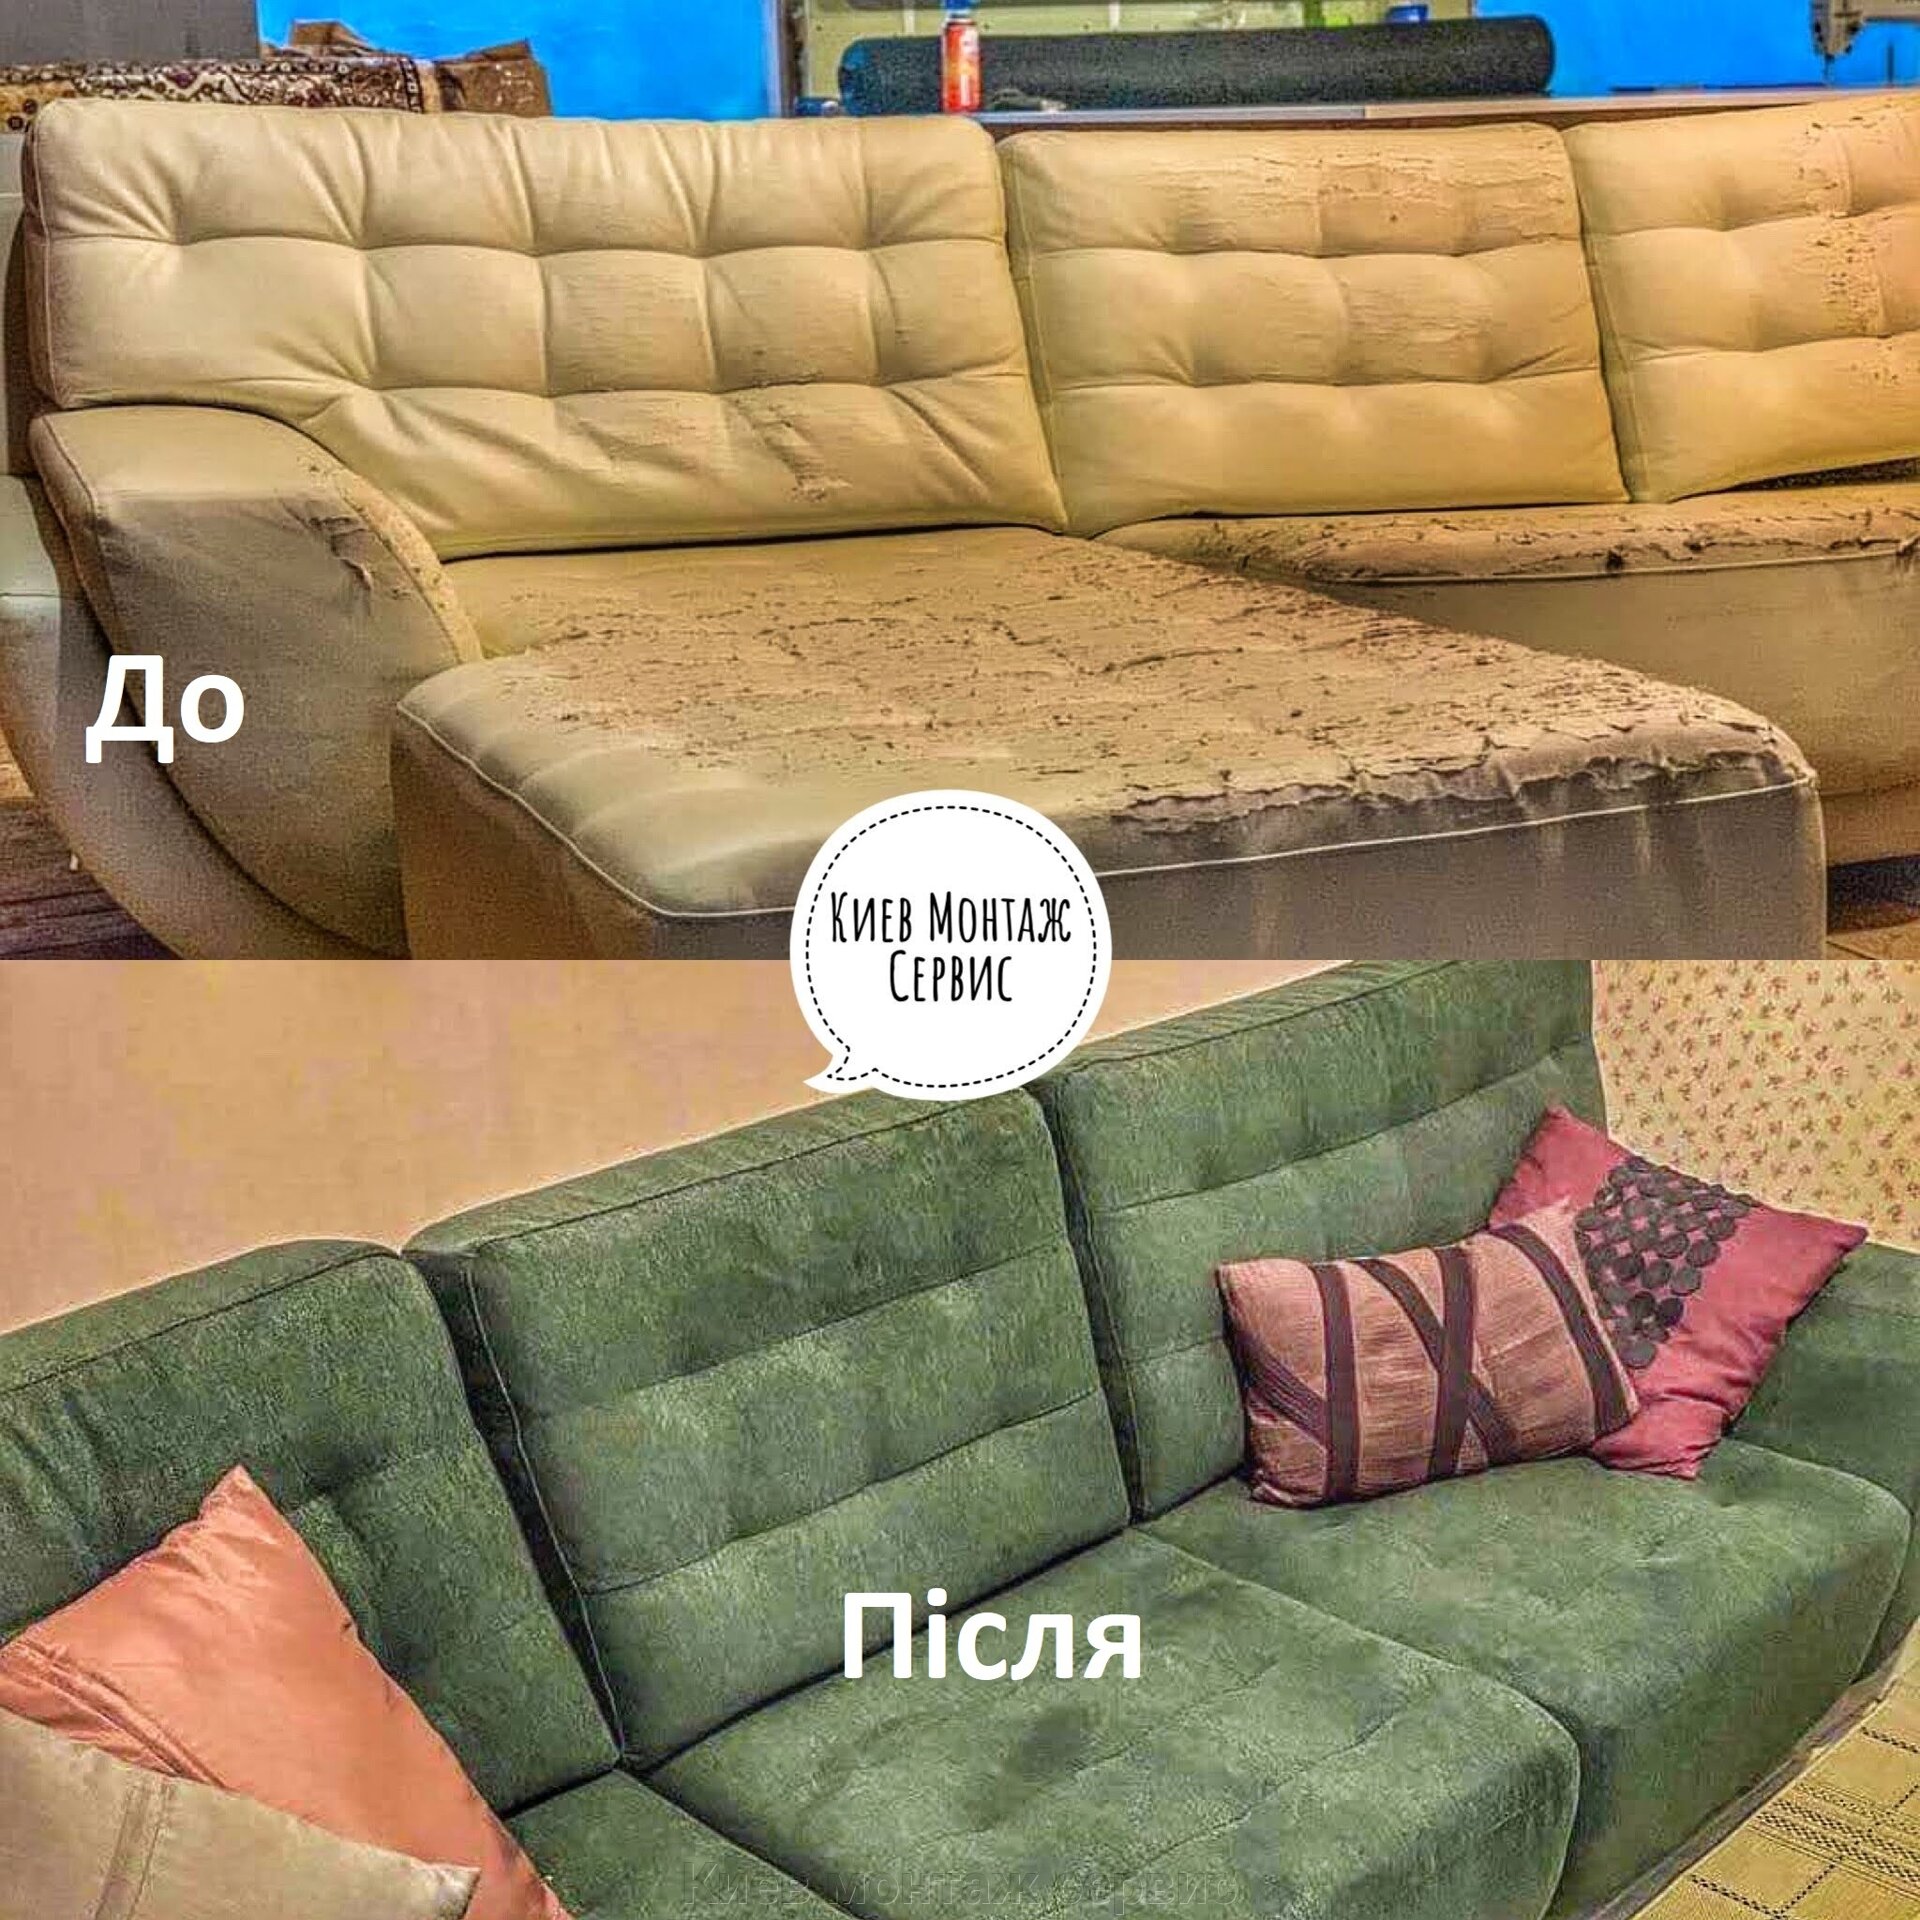 Ремонт и перетяжка мебели в Киеве Дарница. Реставрация, обивка